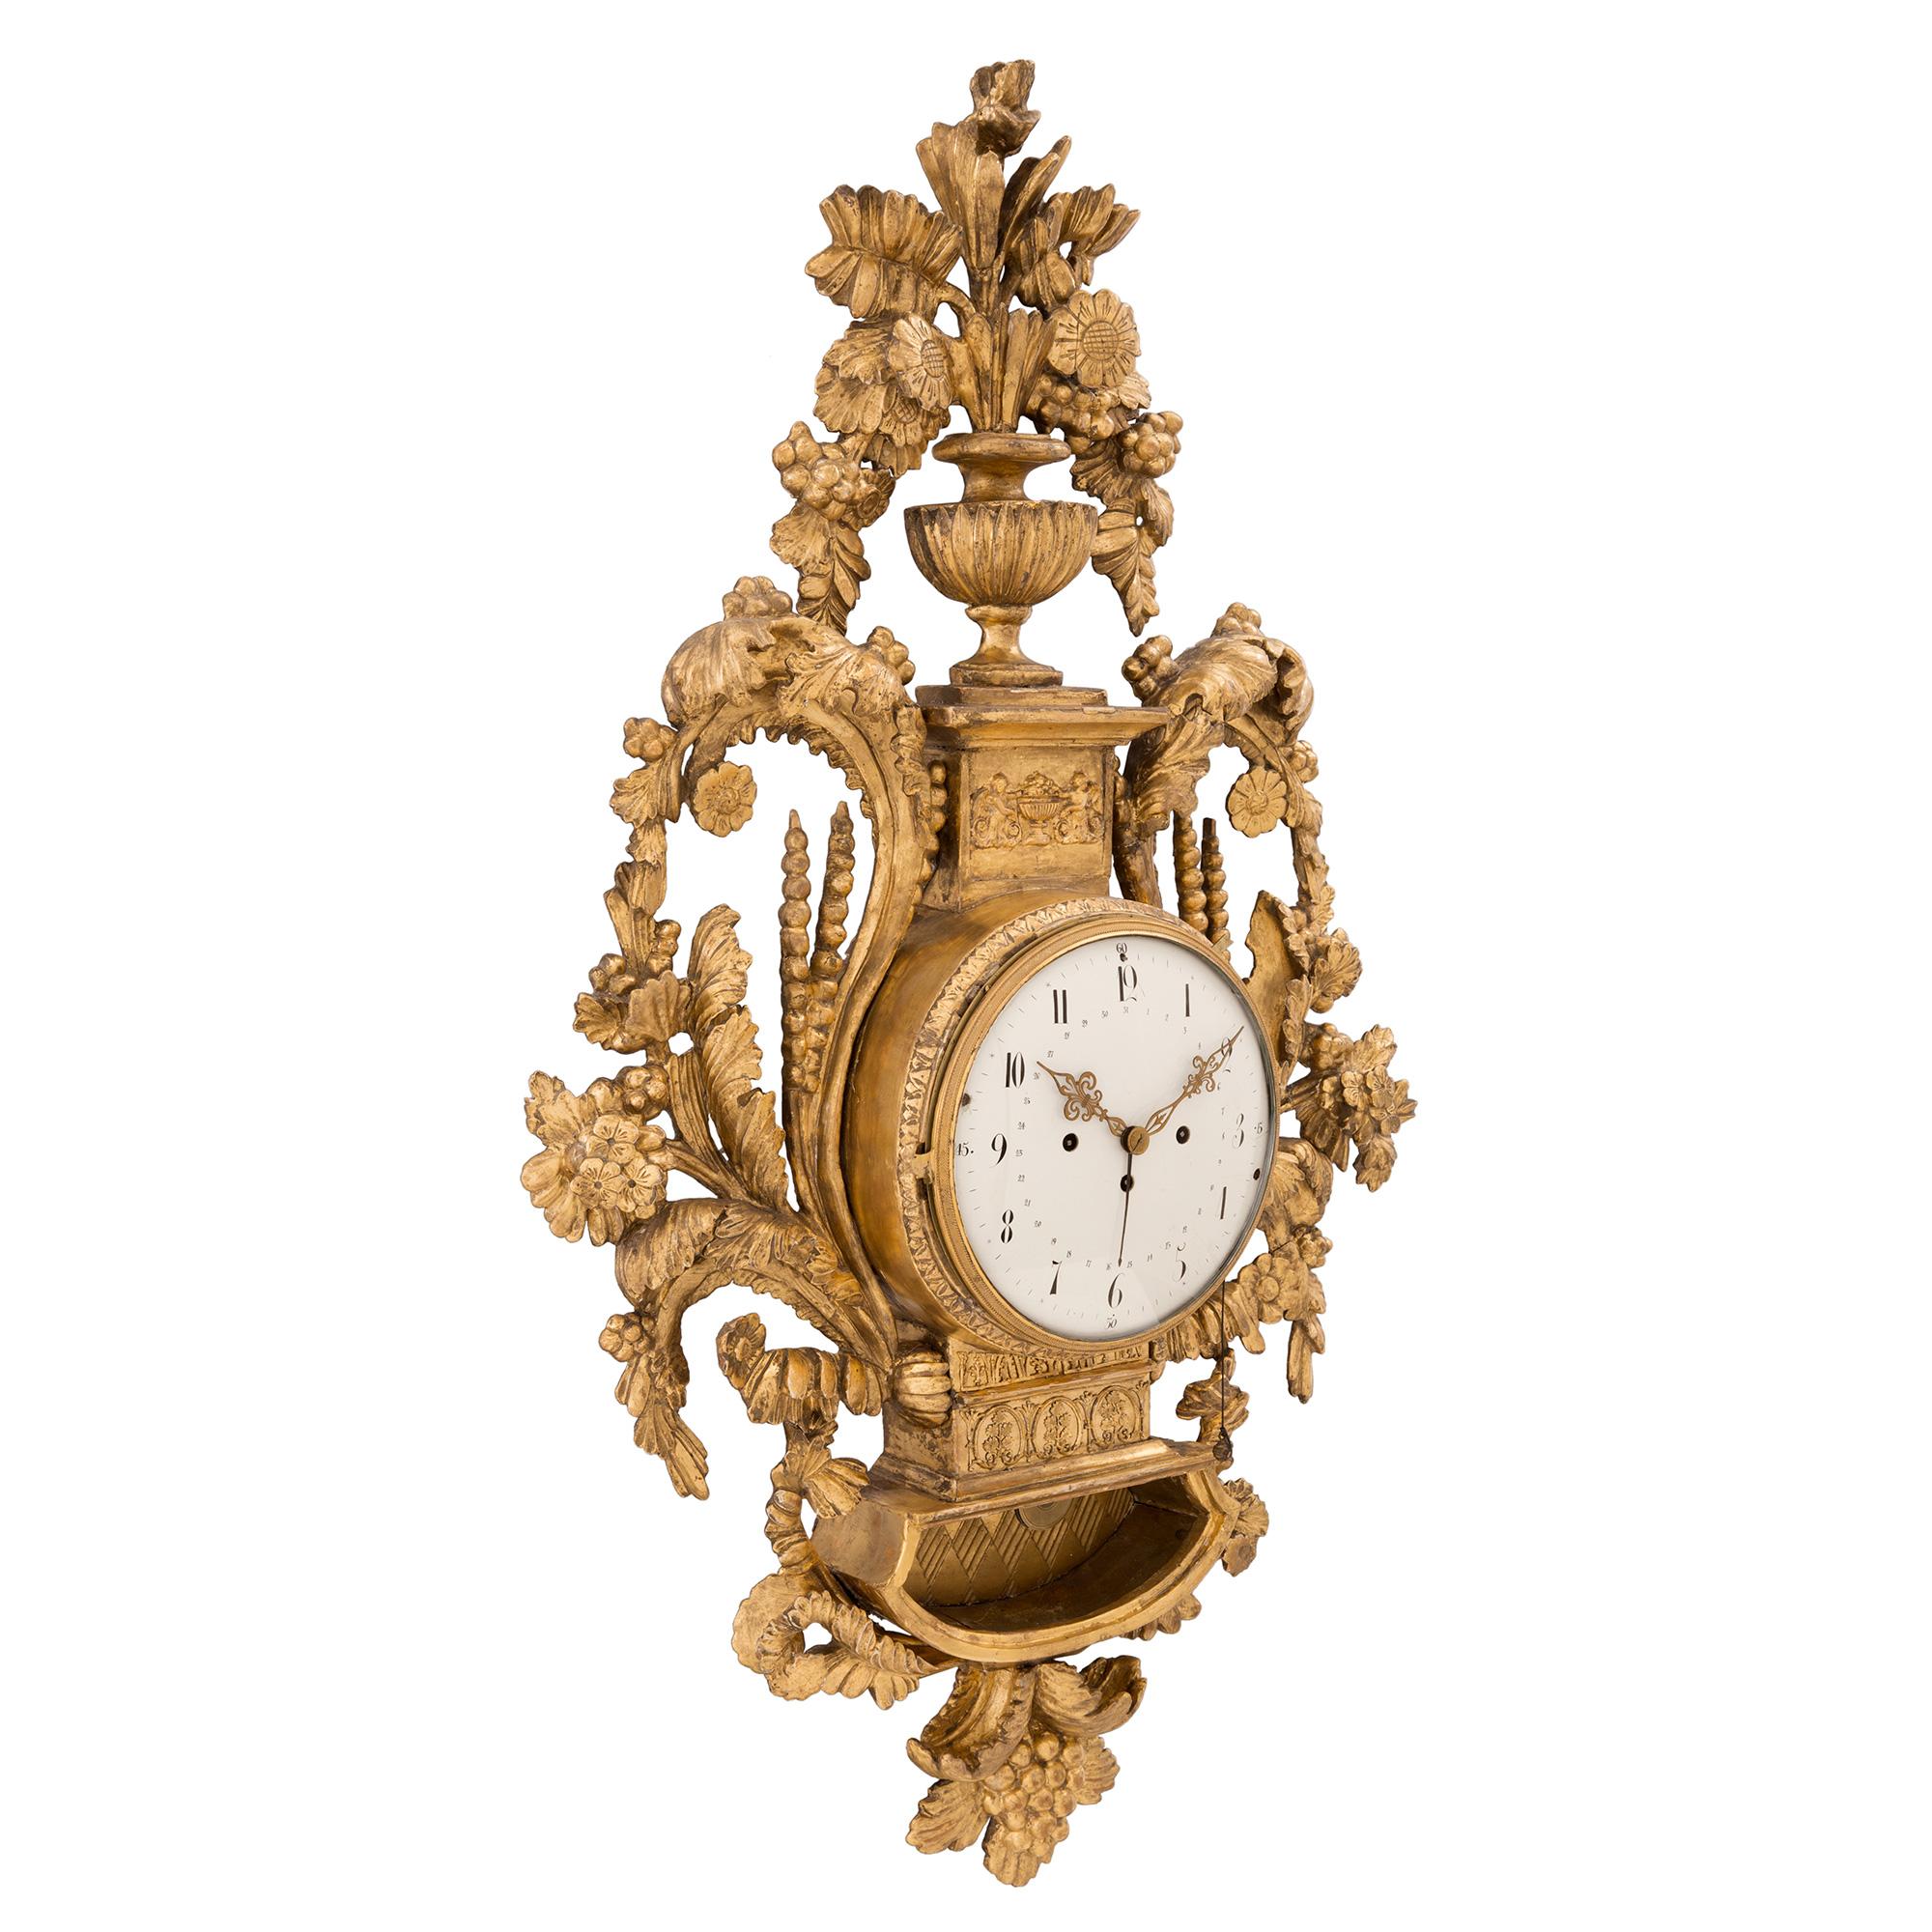 Eine sensationelle und äußerst hochwertige österreichische Blindenuhr aus vergoldetem Holz aus der Zeit Ludwigs XVI, um 1740. Die Uhr hat ein wunderschön geschnitztes Gehäuse mit detaillierten, verschlungenen Mustern, Weizenzweigen und prächtigen,